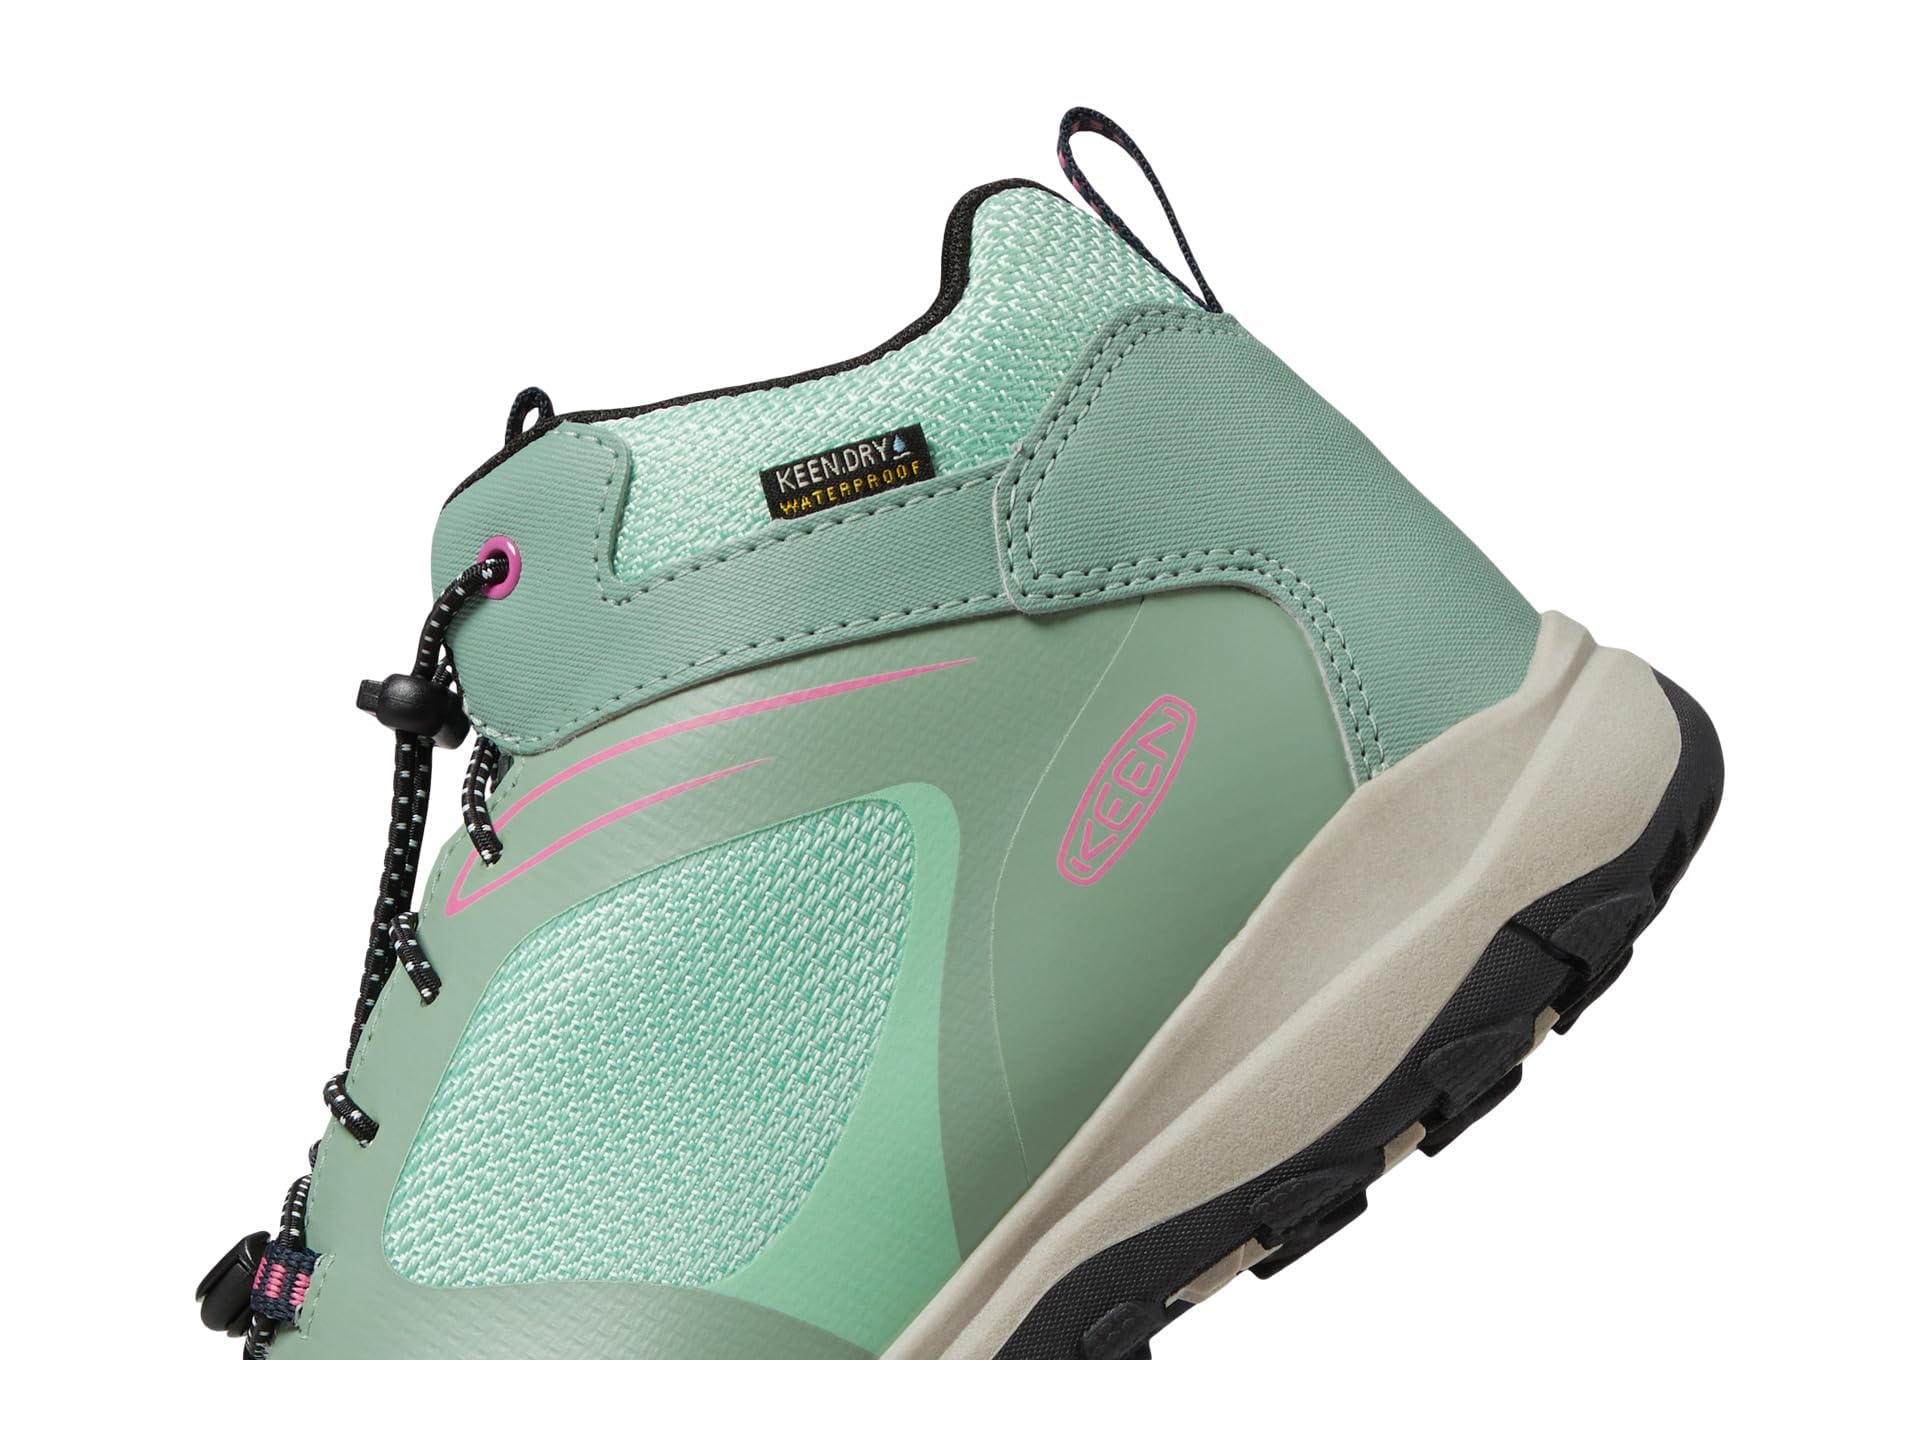 KEEN Wanduro Mid Height Waterproof Easy On Durable Sneaker Hiking Boots, Granite Green/Ibis Rose, 3 US Unisex Big Kid